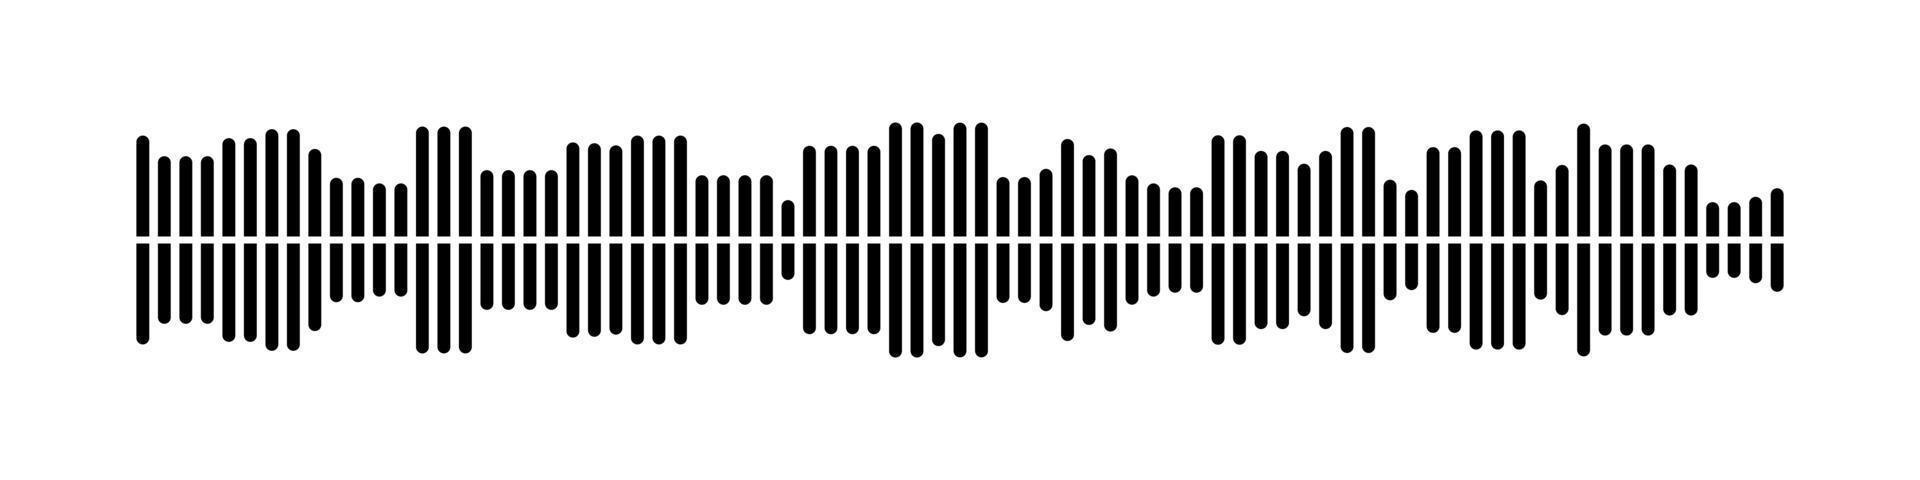 podcast sonido olas recopilación. voz mensaje para social medios de comunicación aplicación igualada plantilla, sonido espectro. vector aislado ilustración